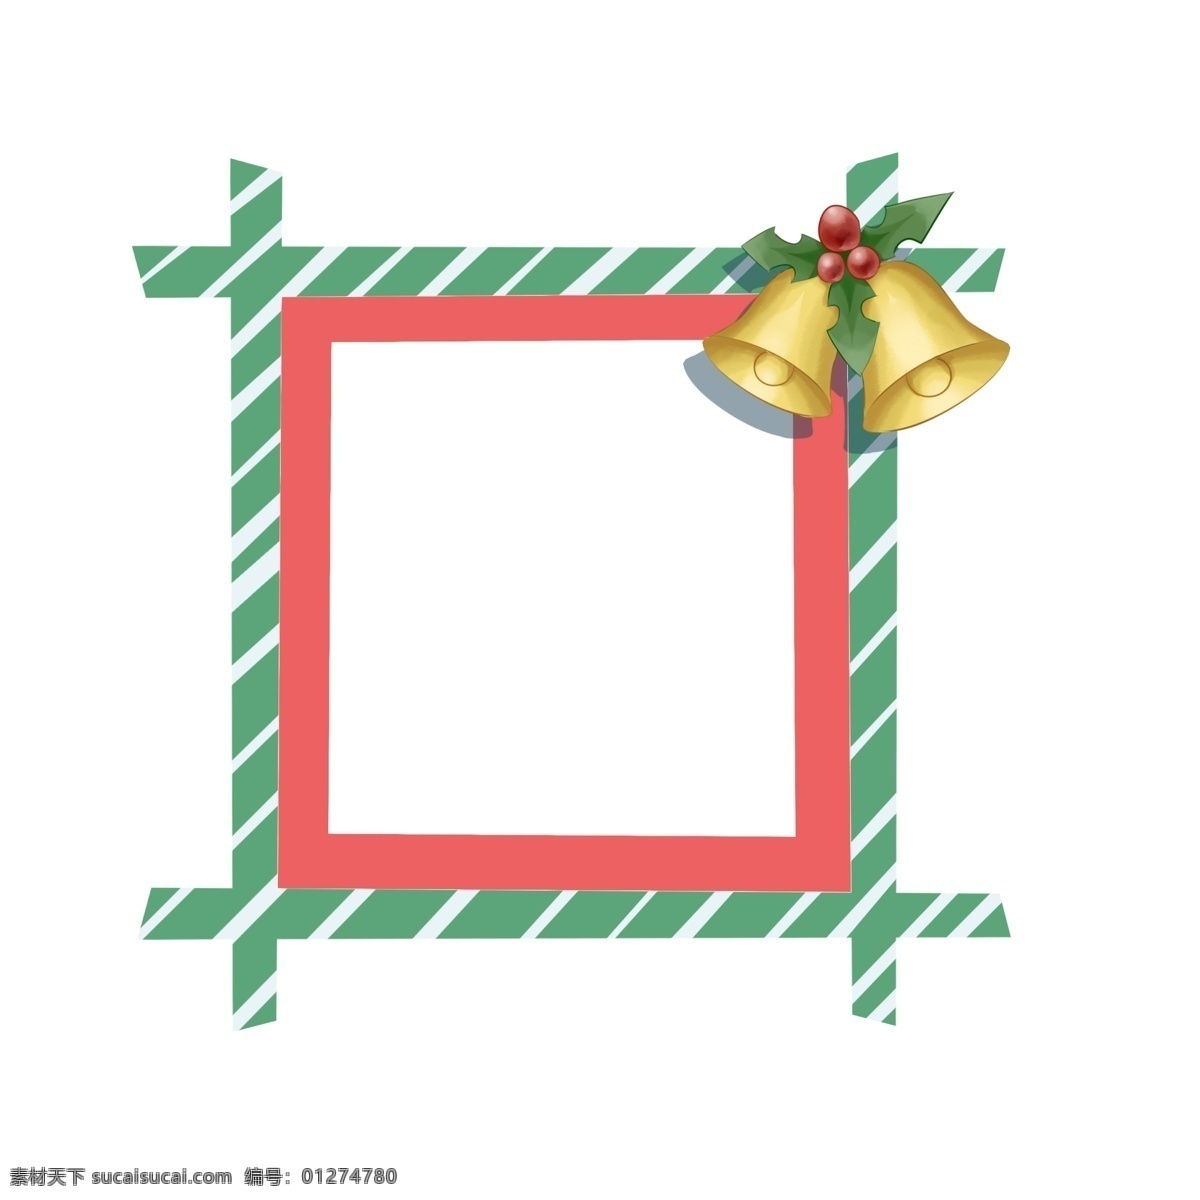 圣诞节 铃铛 边框 插画 红色的圣诞树 绿色的边框 可爱的边框 绿色的叶子 手绘 黄色的铃铛